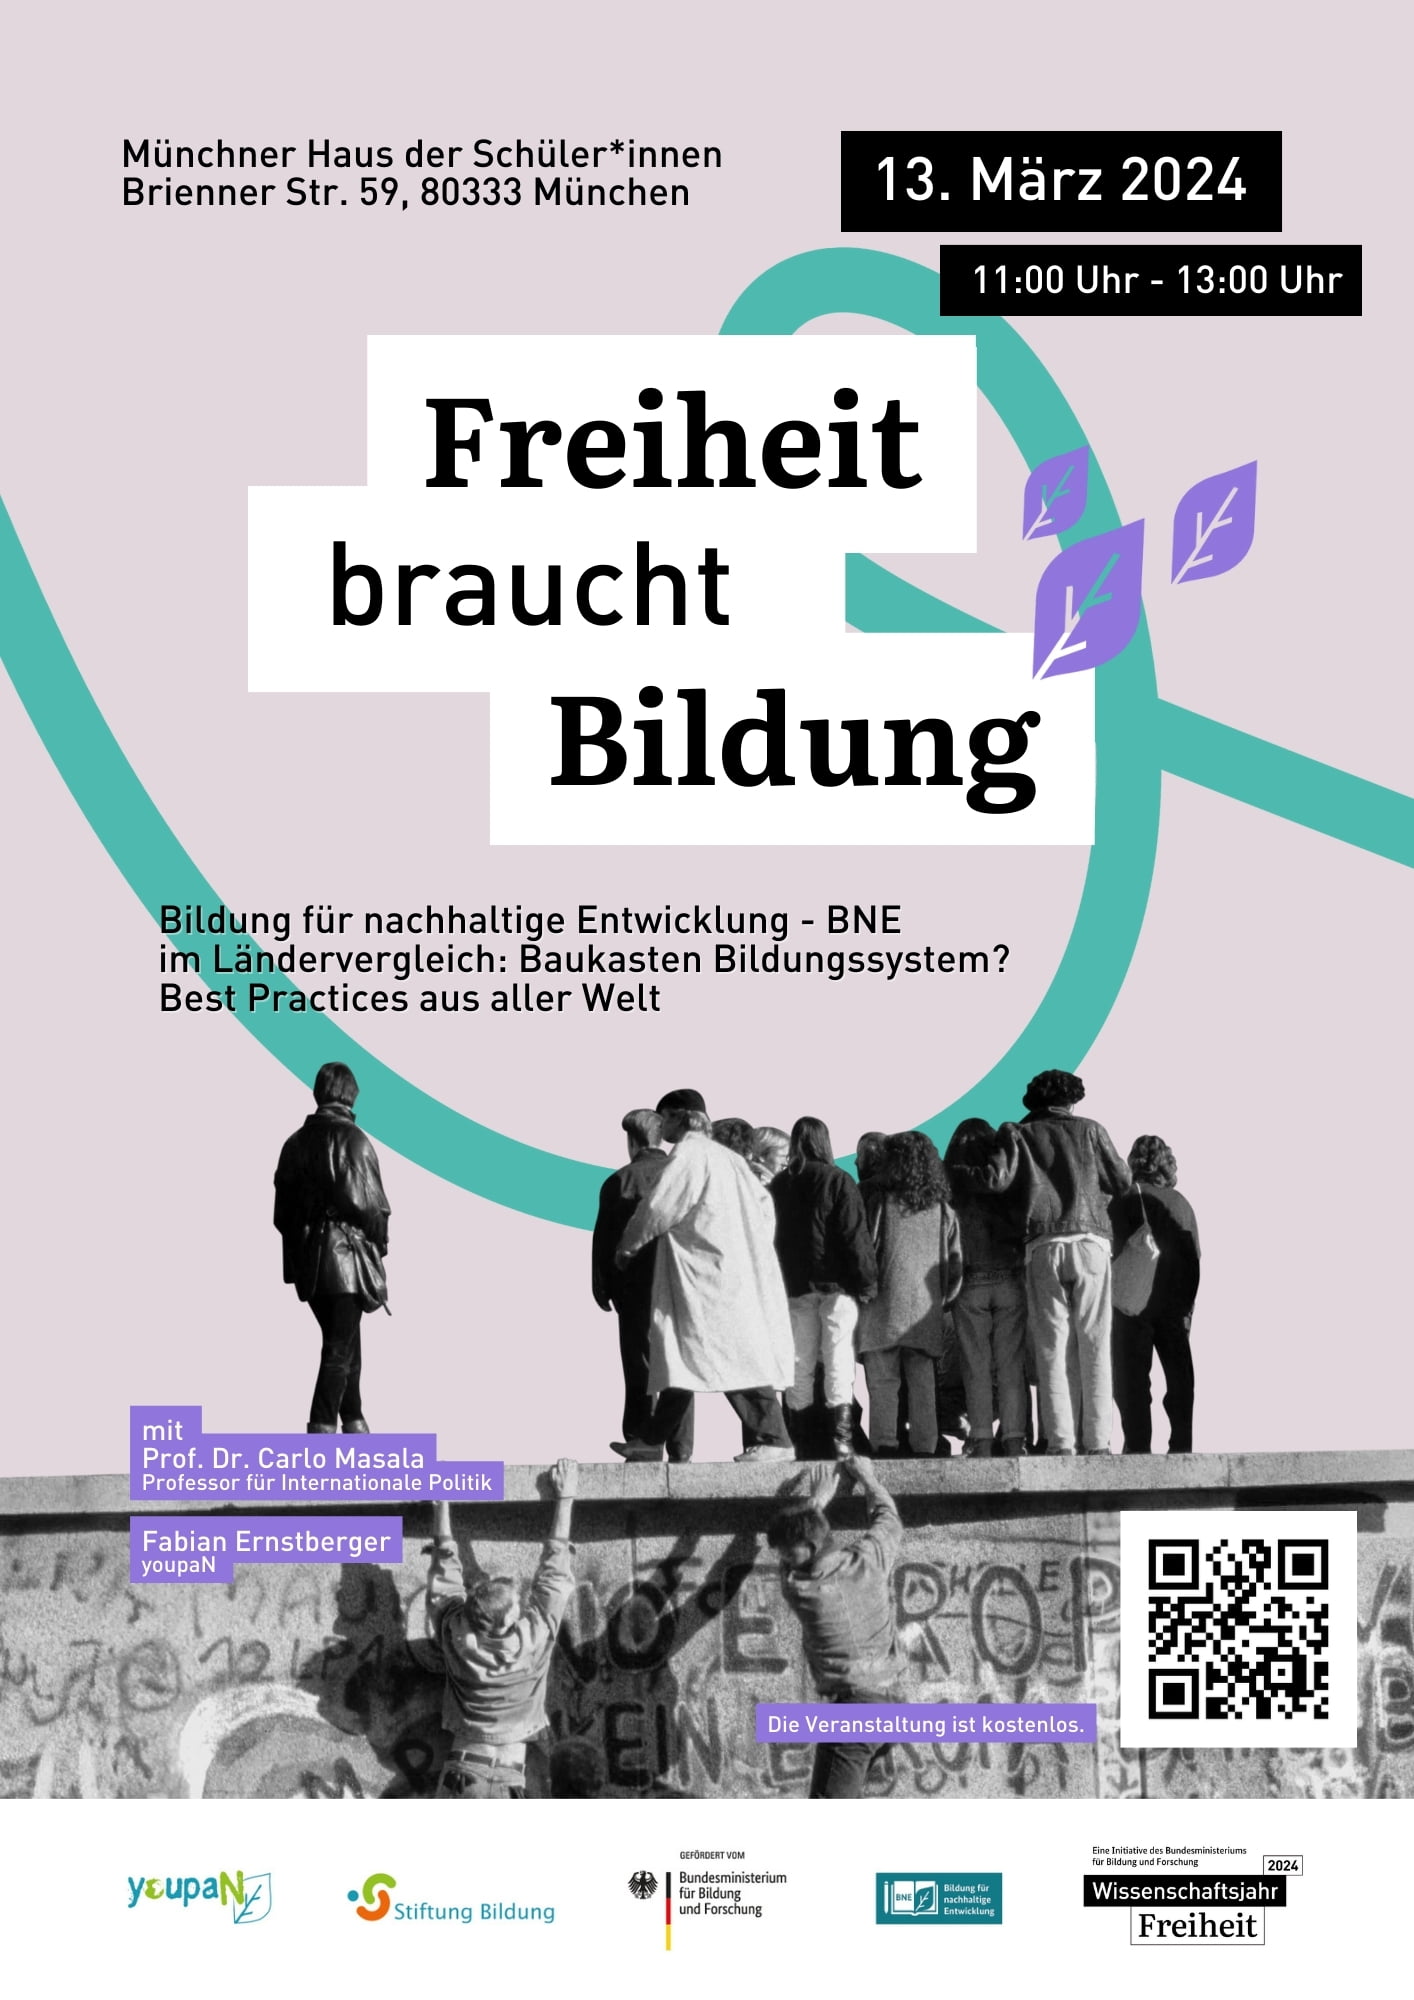 Auf dem Poster ist eine schwarz-weiß Aufnahme der Berliner Mauer zu sehen, über die mehrere Personen hinauf- oder hinüberklettern. Darüber prangt in großen Lettern "Freiheit braucht Bildung".